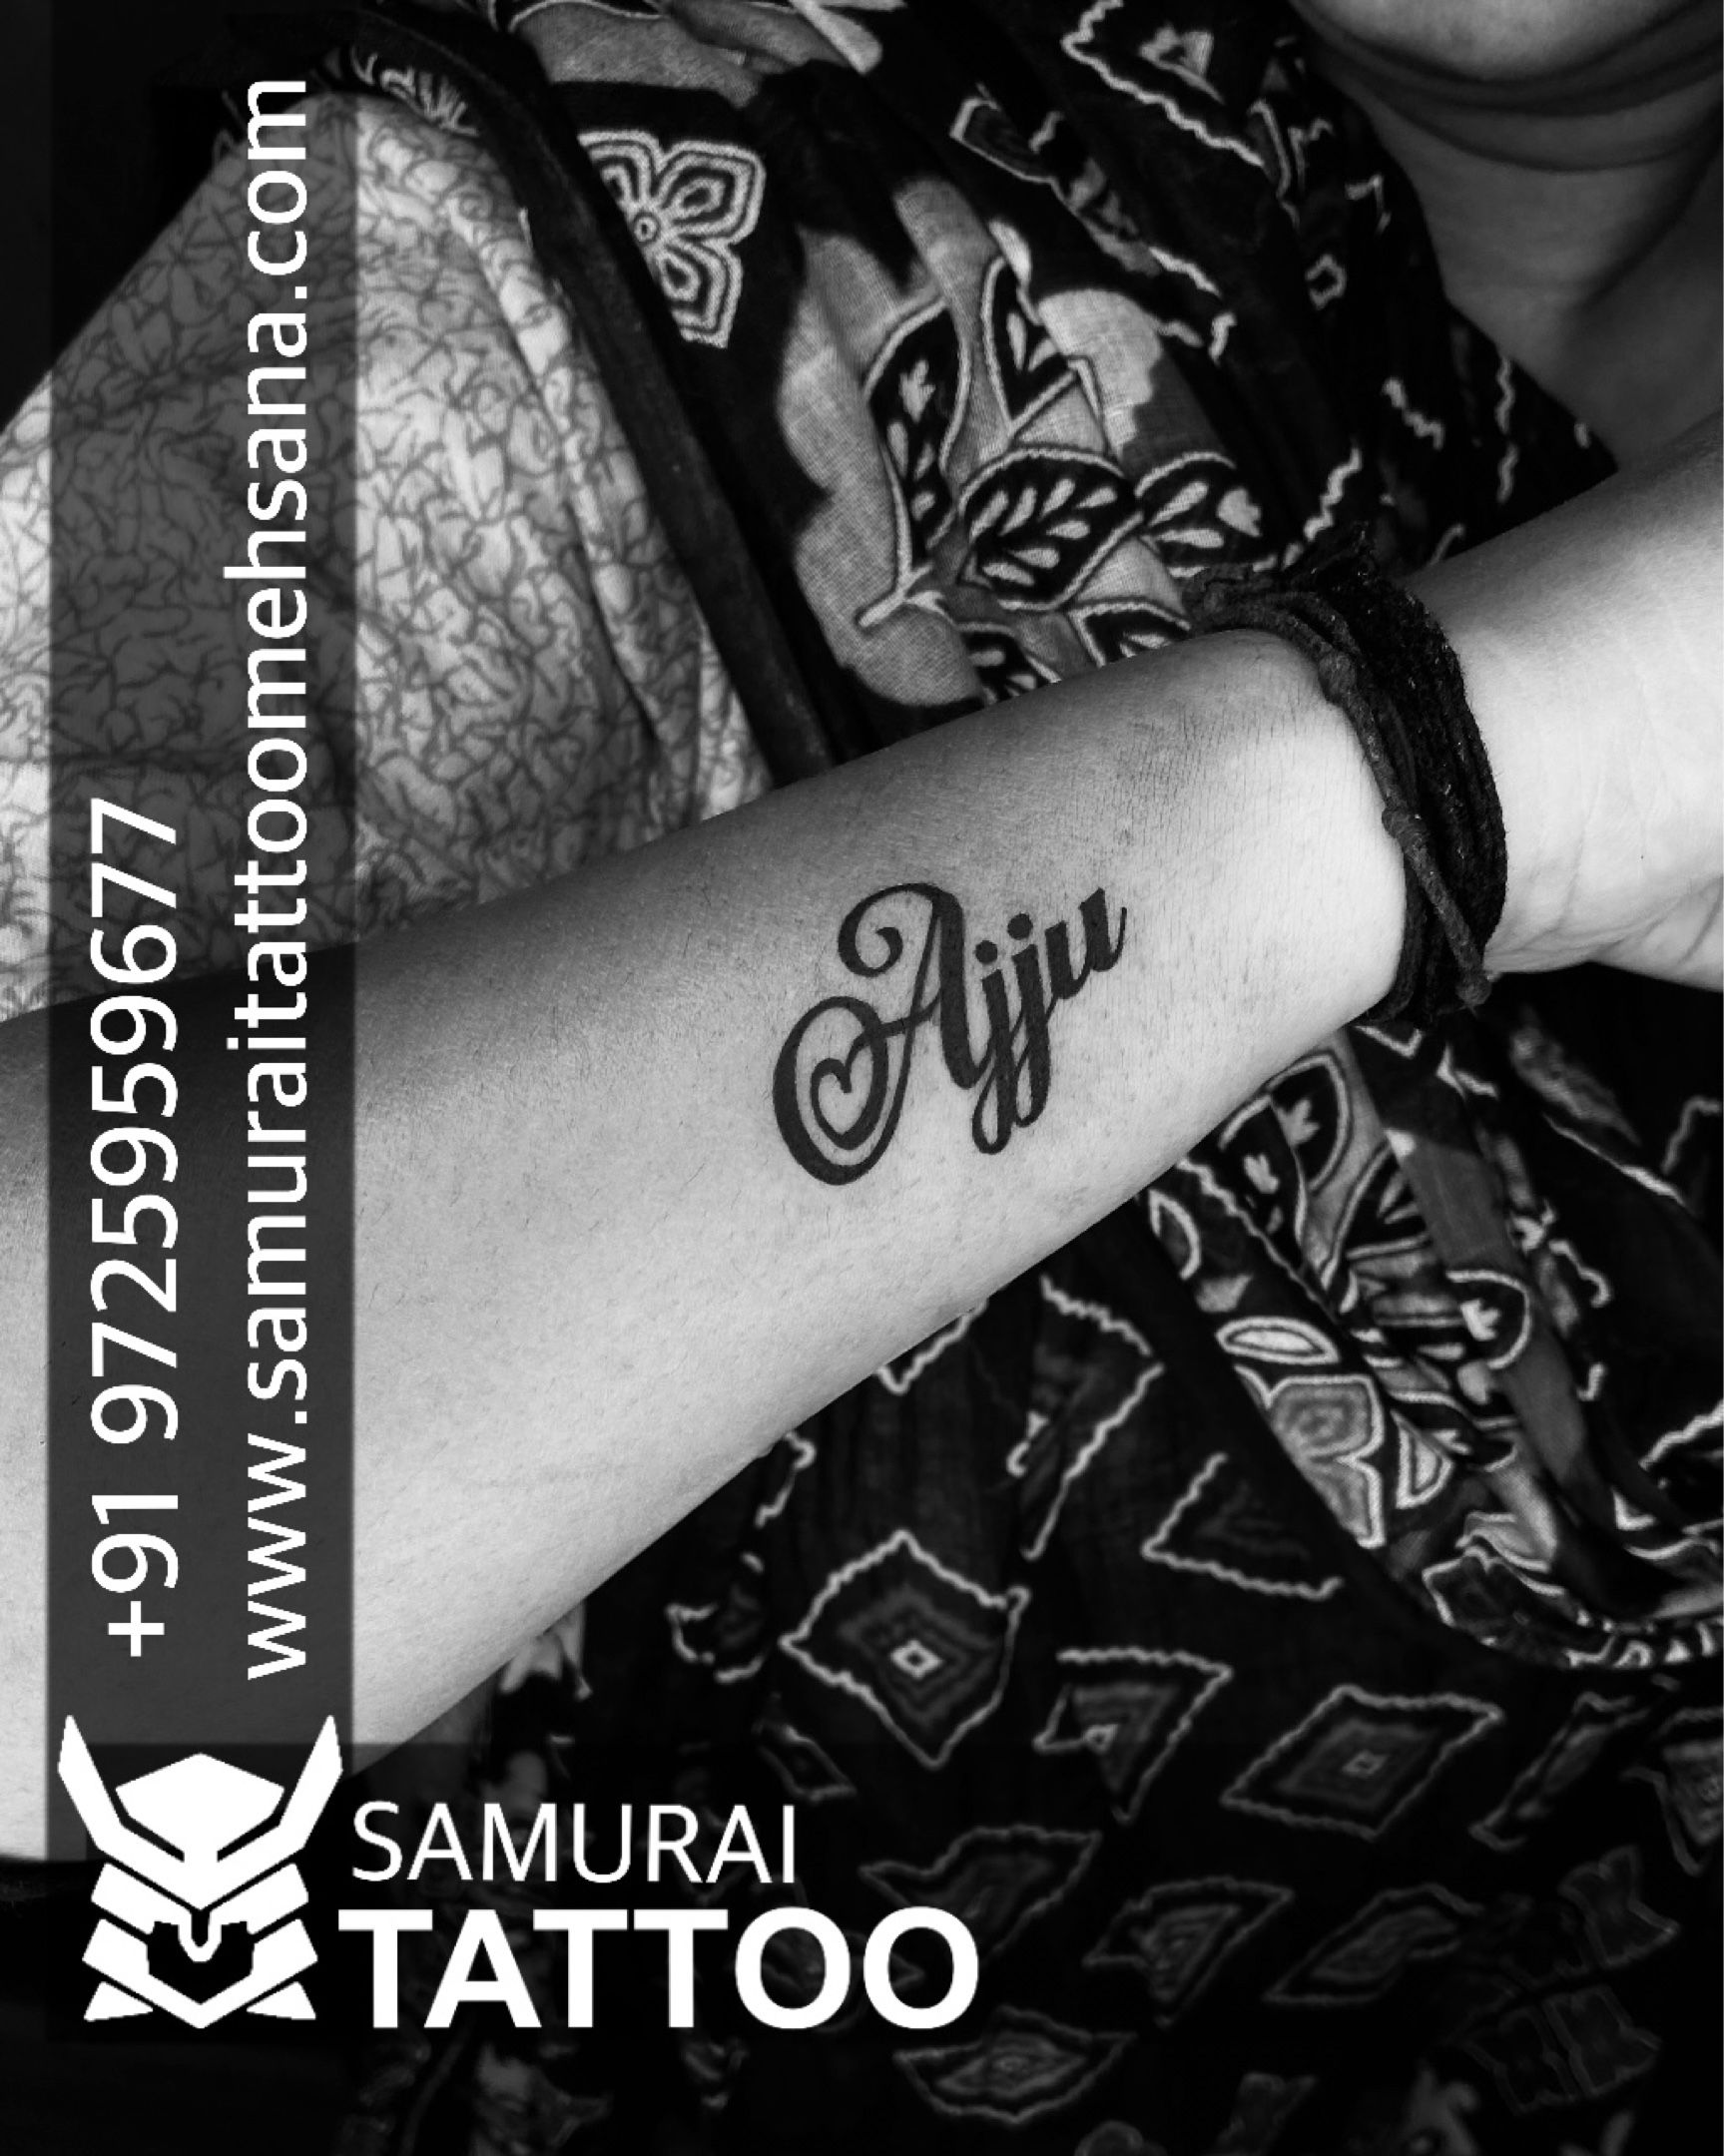 Tattoo uploaded by Samurai Tattoo mehsana  Ajju name tattoo Ajju tattoo  Ajju name tattoo ideas Ajju name tattoo design  Tattoodo